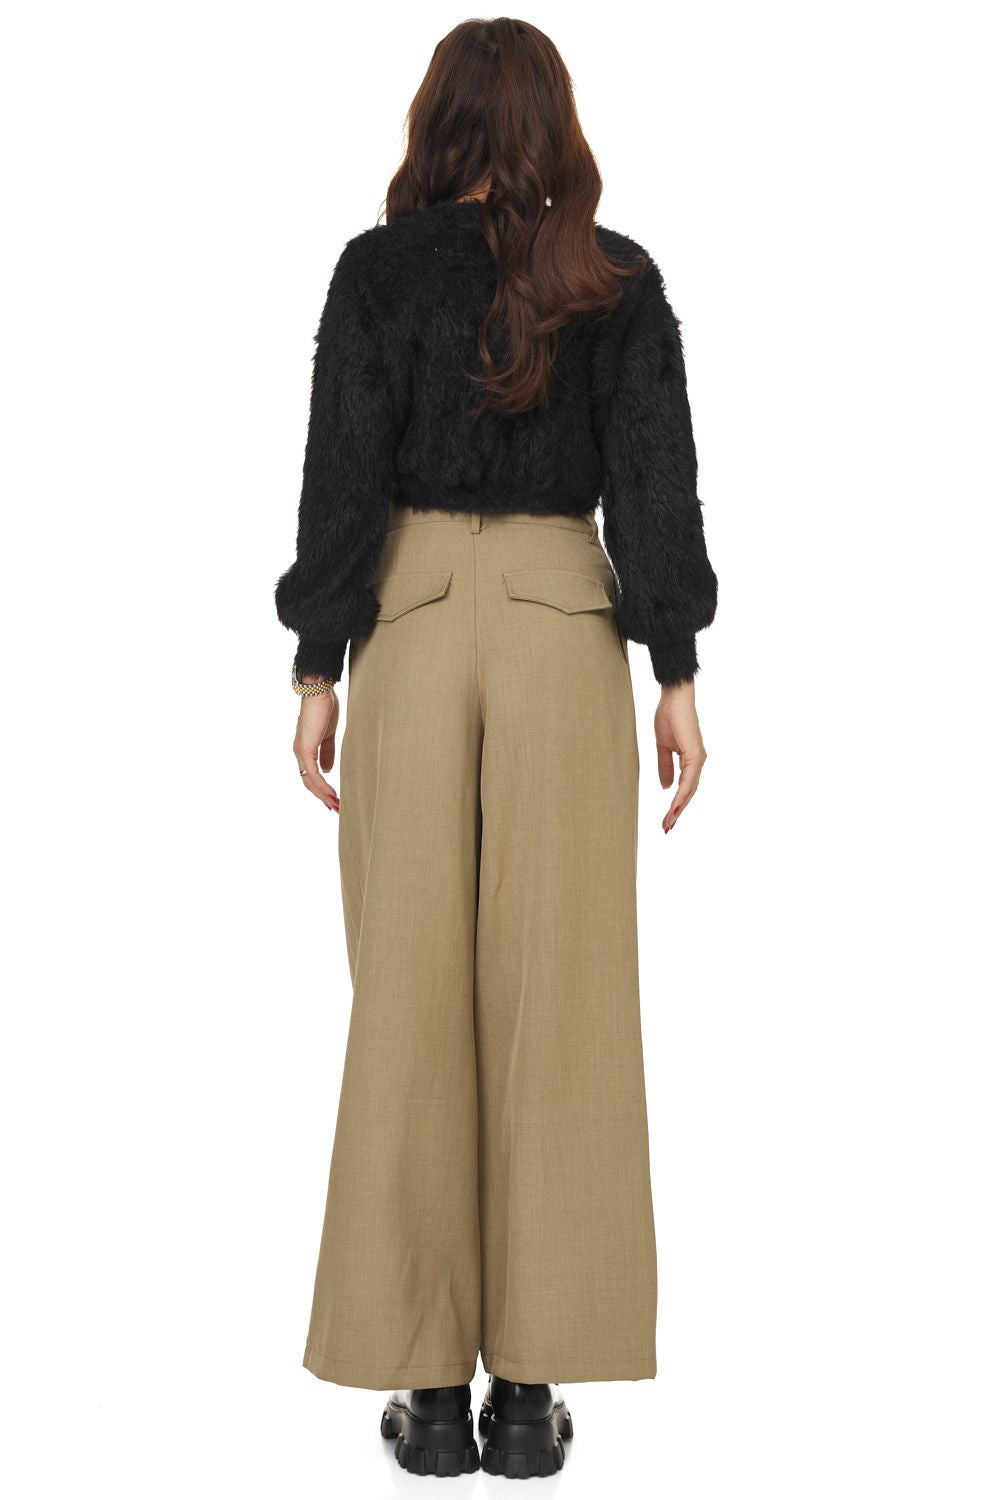 Ladies brown elegant trousers Adezia Bogas